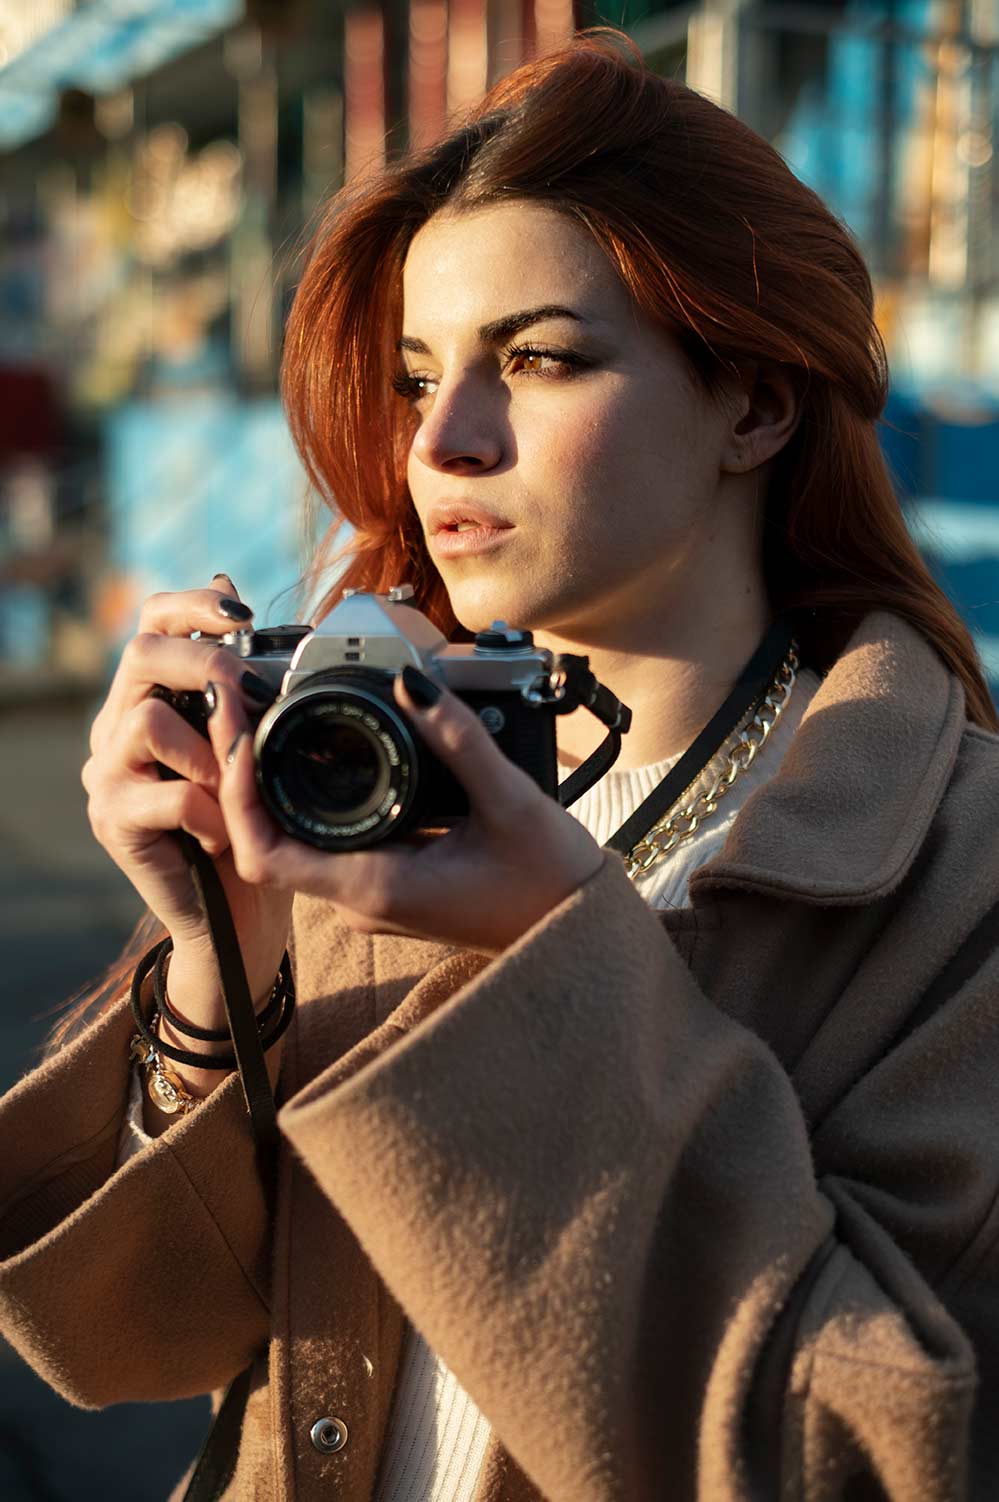 Portre Fotoğrafçılığı Rehberi - En İyi İpuçları, Stiller ve Pozlar